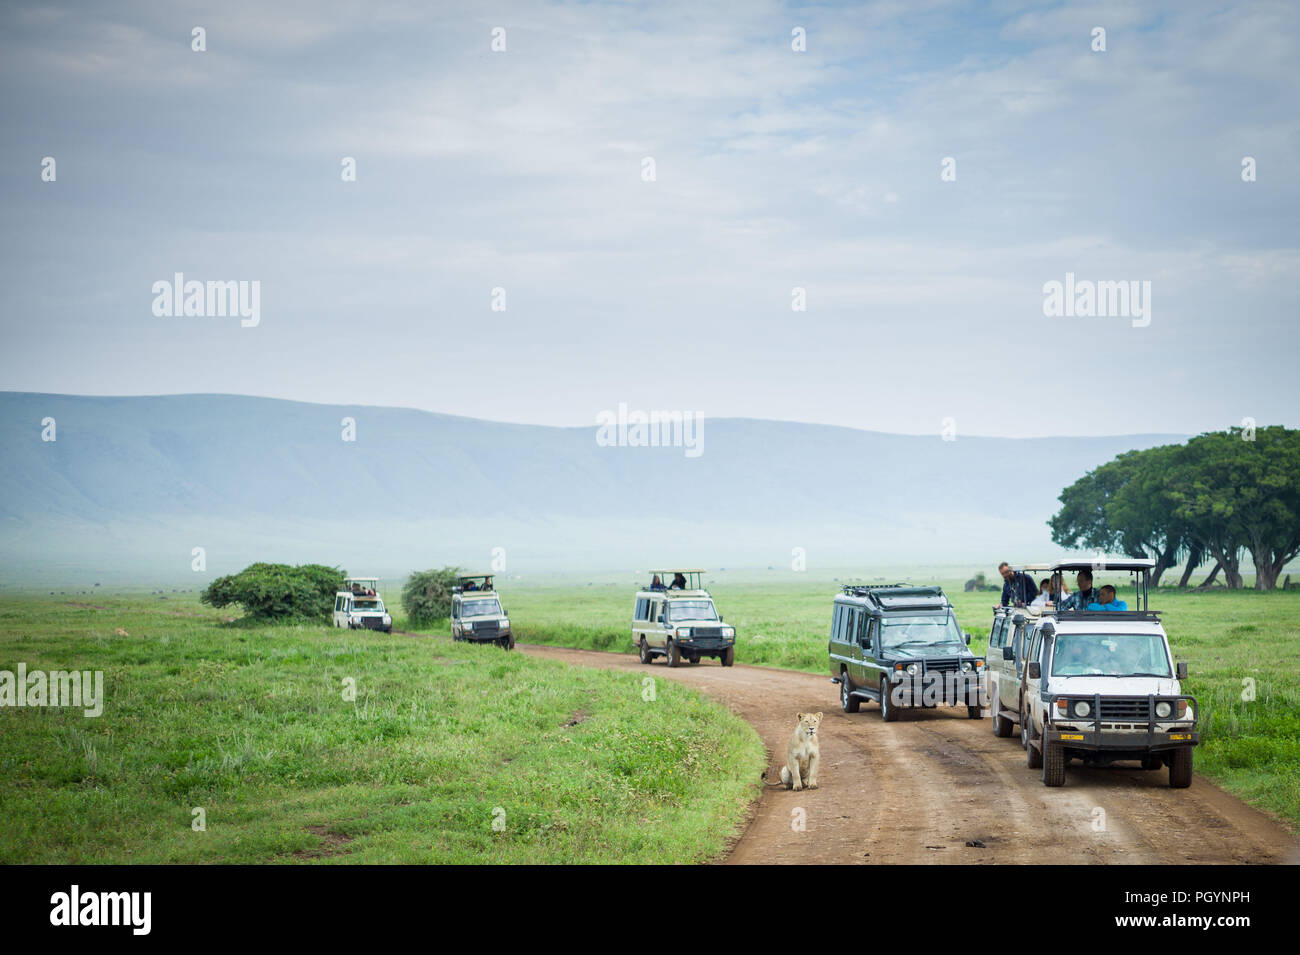 Game Drive Fahrzeuge Line up eine Löwin zu sehen, Panthera leo, Ngorongoro Krater Ngorongoro Crater Conservation Area, Region Arusha, Tansania. Stockfoto